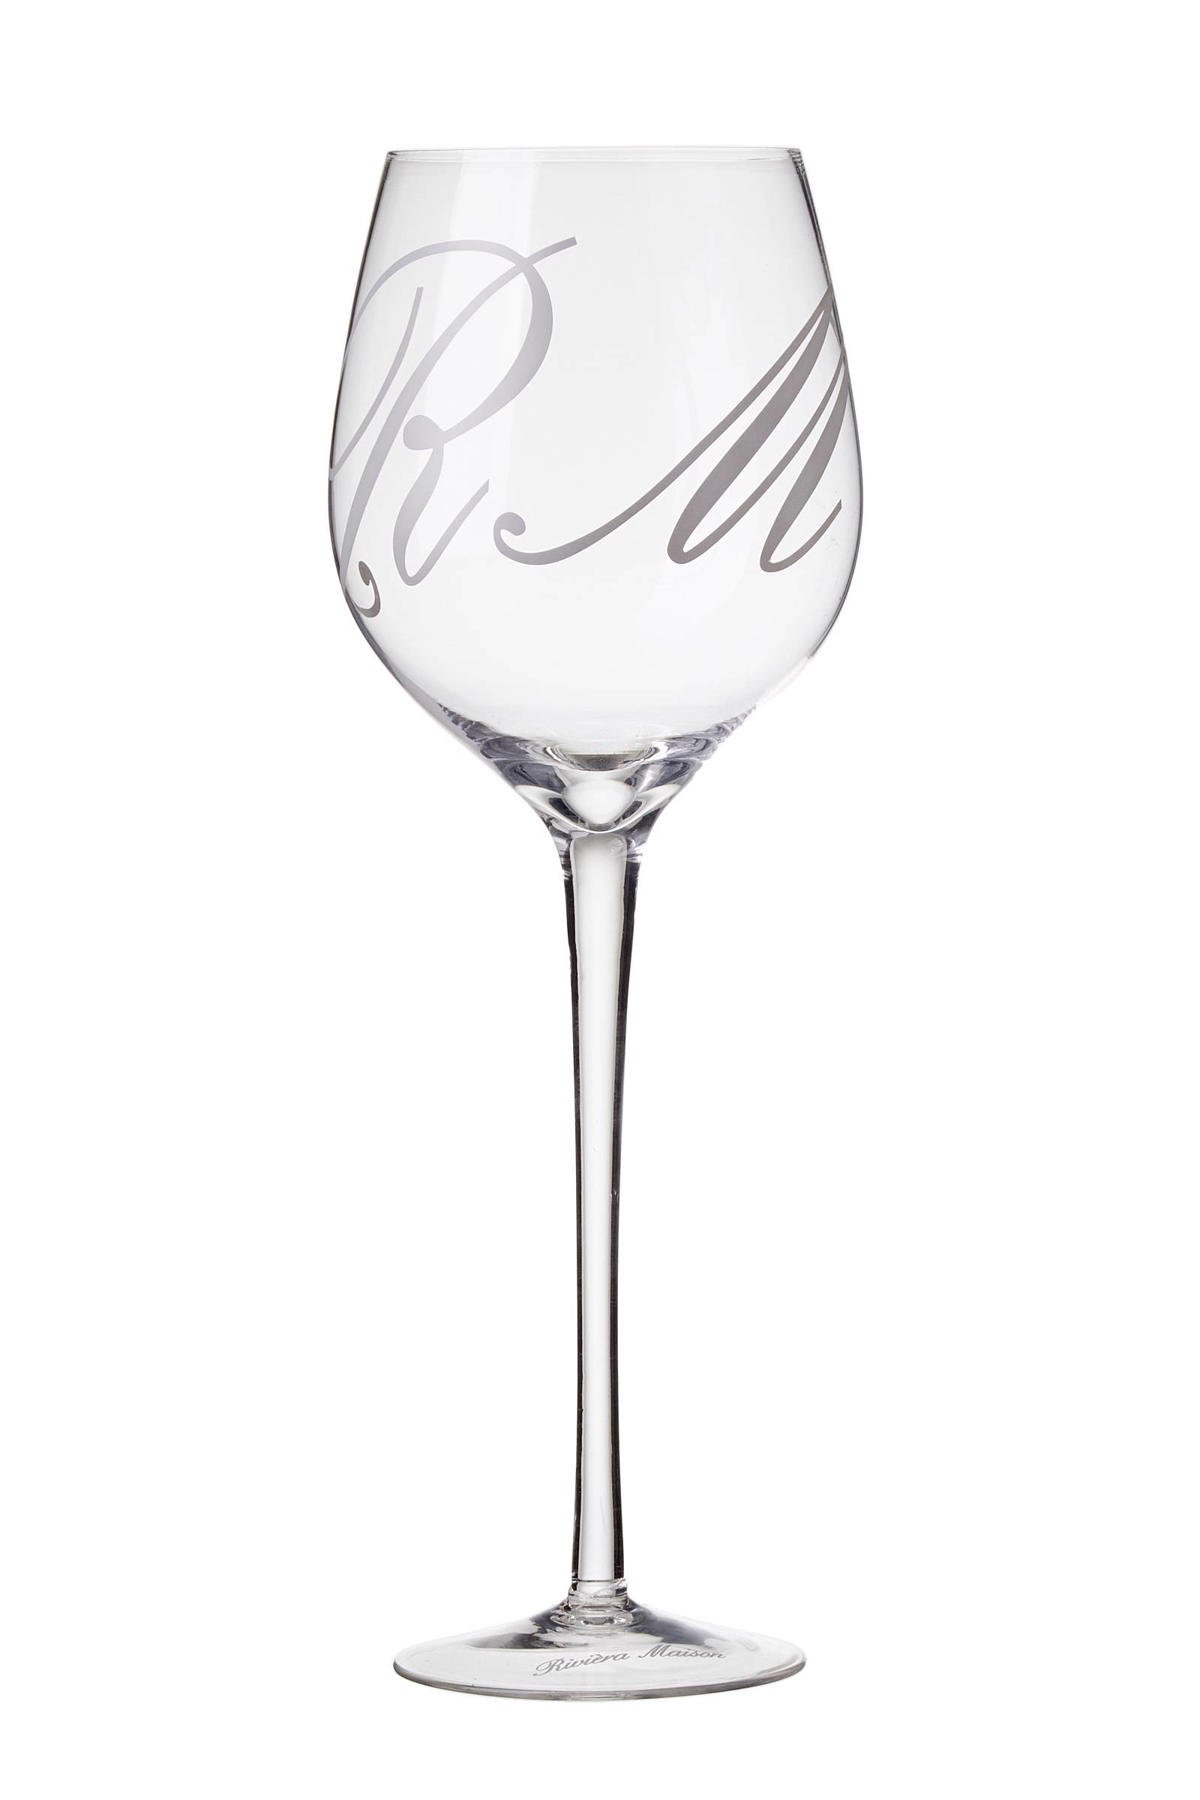 Preek Kinderdag snor Riviera Maison wijnglas (Ø8,5 cm) | wehkamp